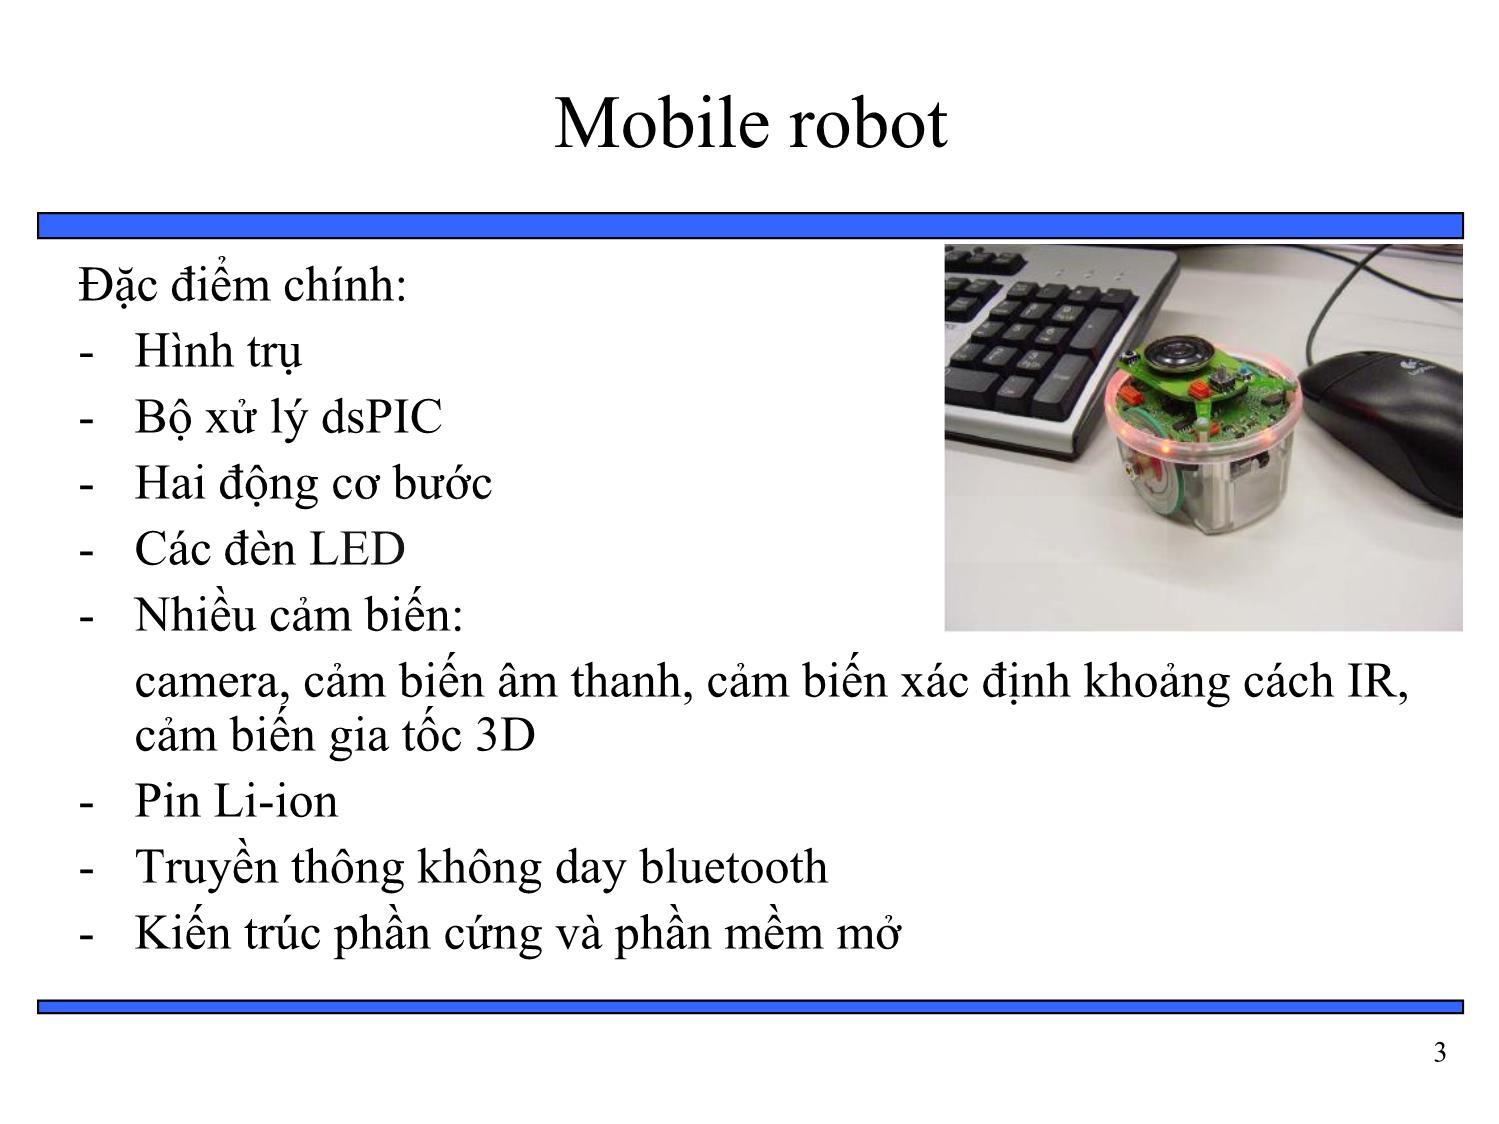 Bài giảng Thiết kế hệ thống nhúng - Chương 6: Tổng hợp phần cứng và phần mềm - Bài 10: Ví dụ về hệ thống nhúng mobile robot trang 3